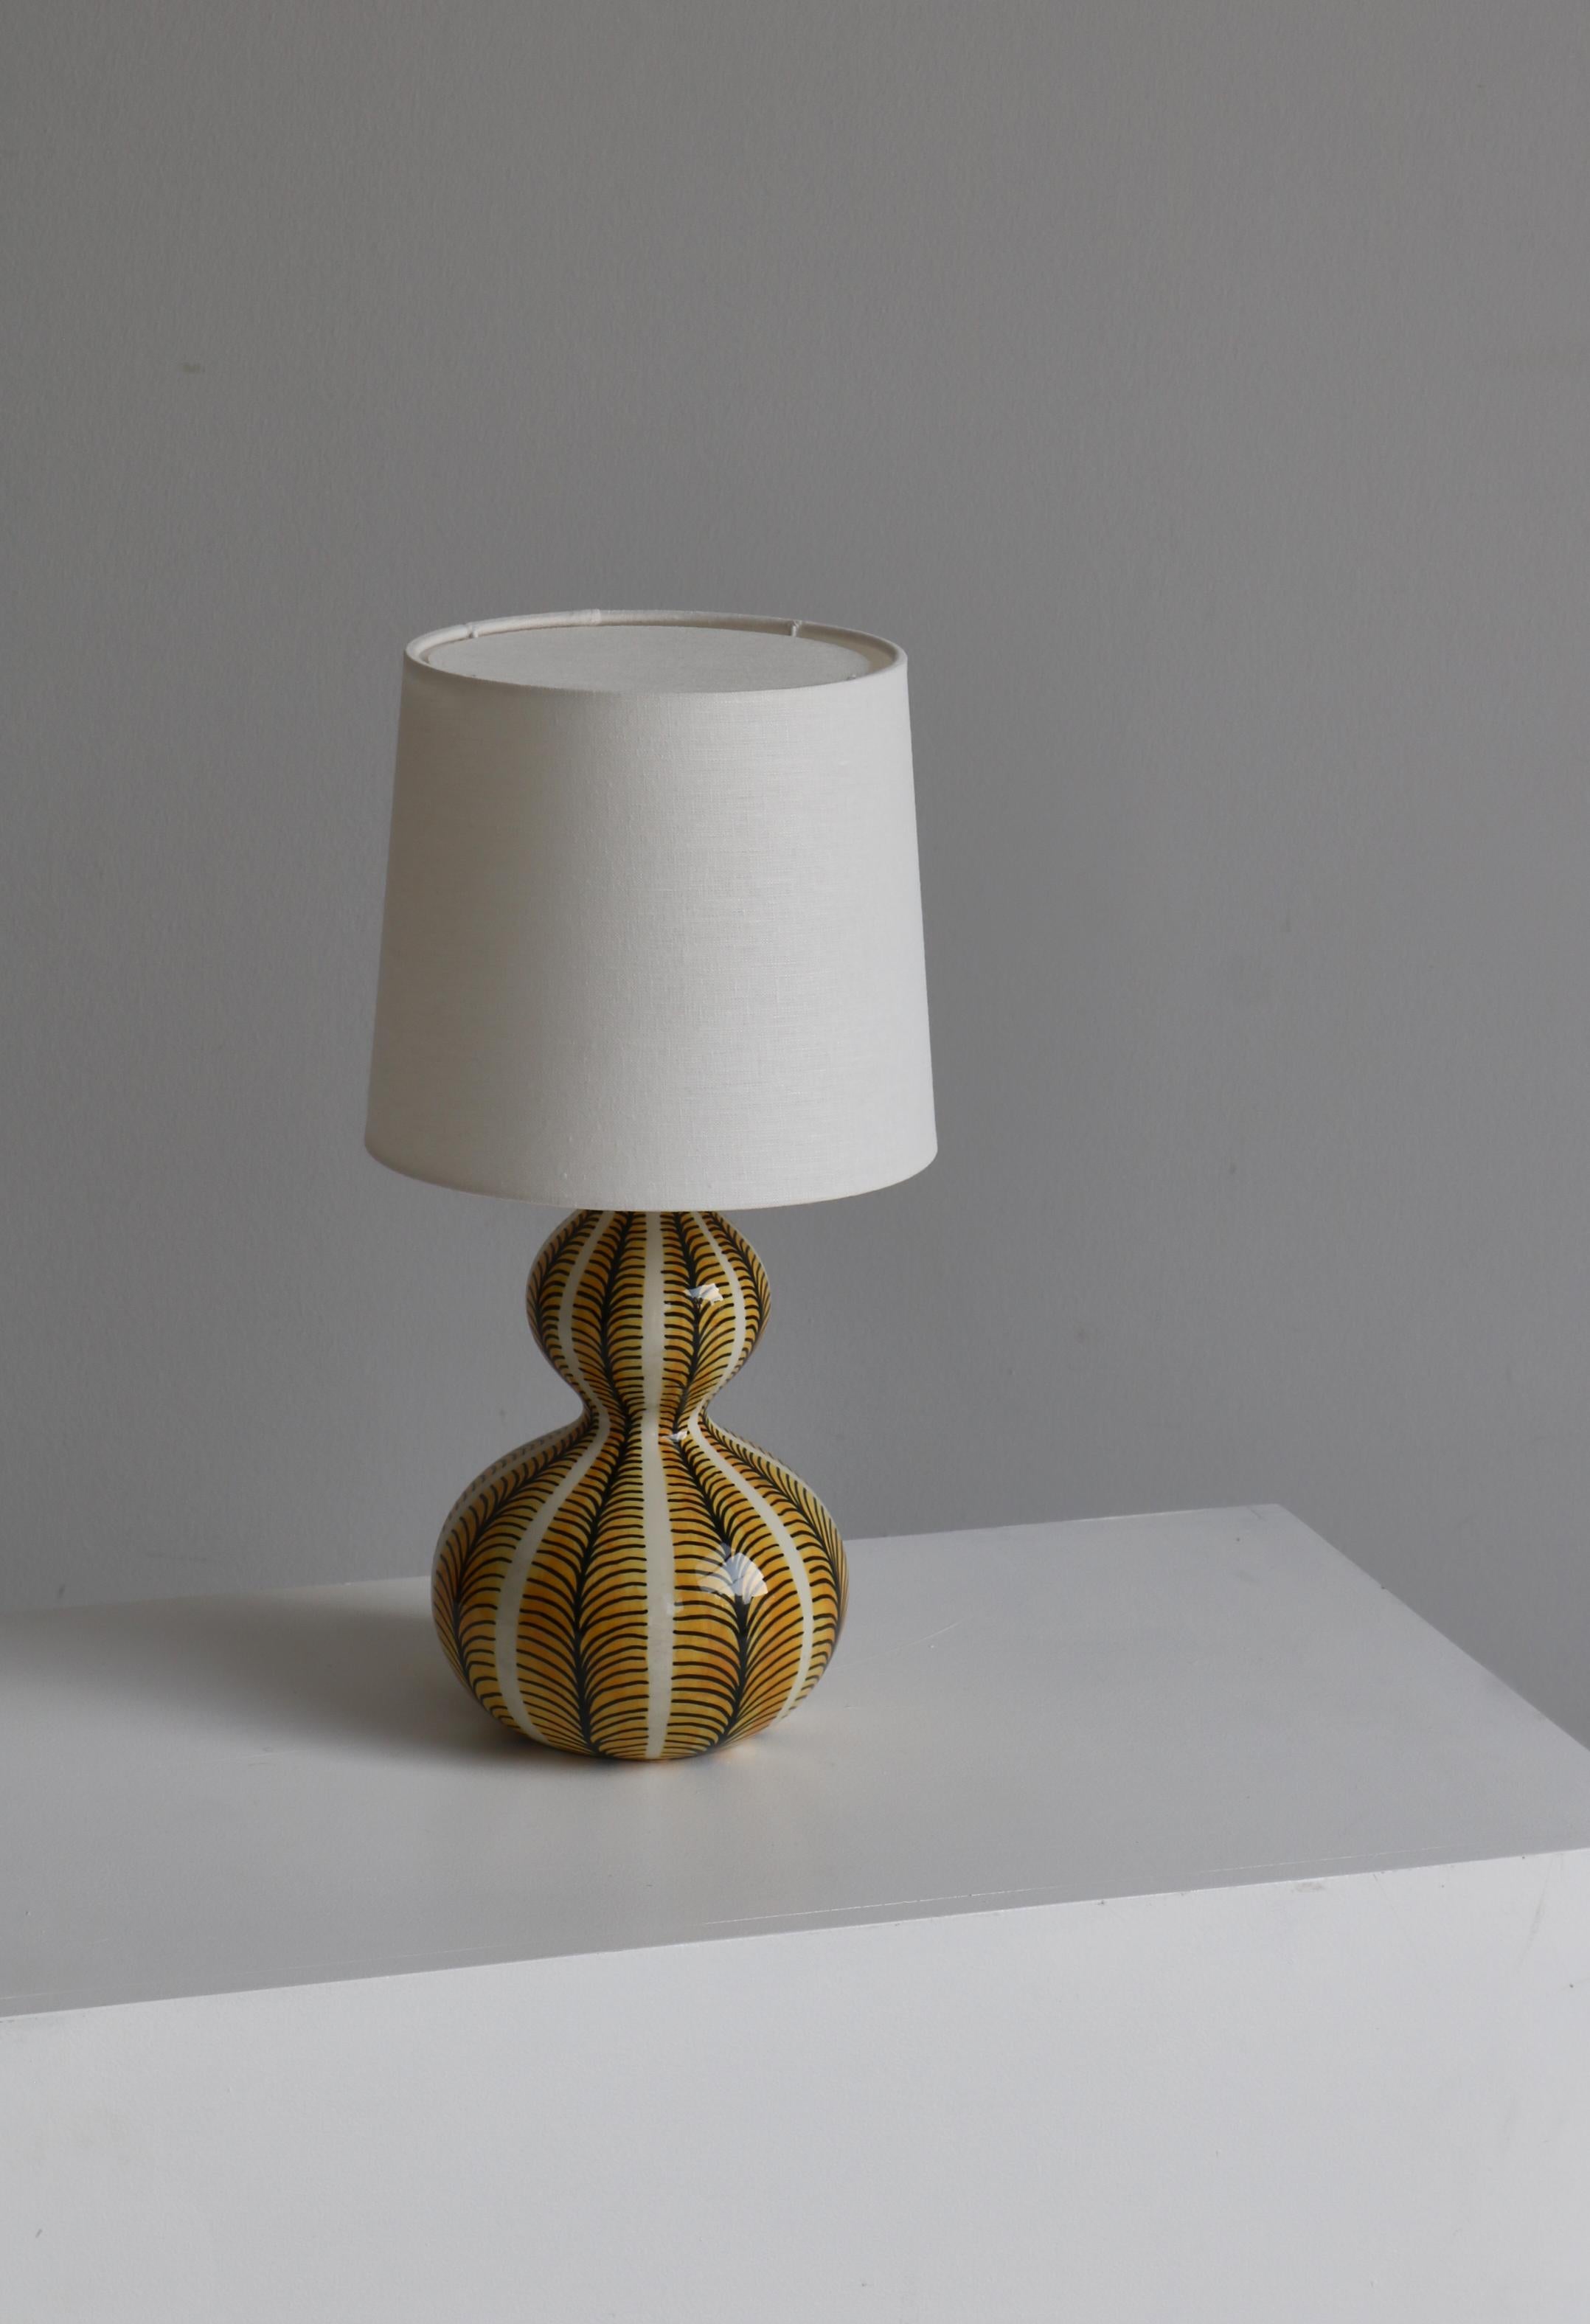 Lampe de table en céramique en forme de gourde fabriquée par Eva et Johannes Andersen dans leur Studio à Copenhague, Danemark, dans les années 1950. La lampe est décorée à la main et émaillée ensuite. Signé 